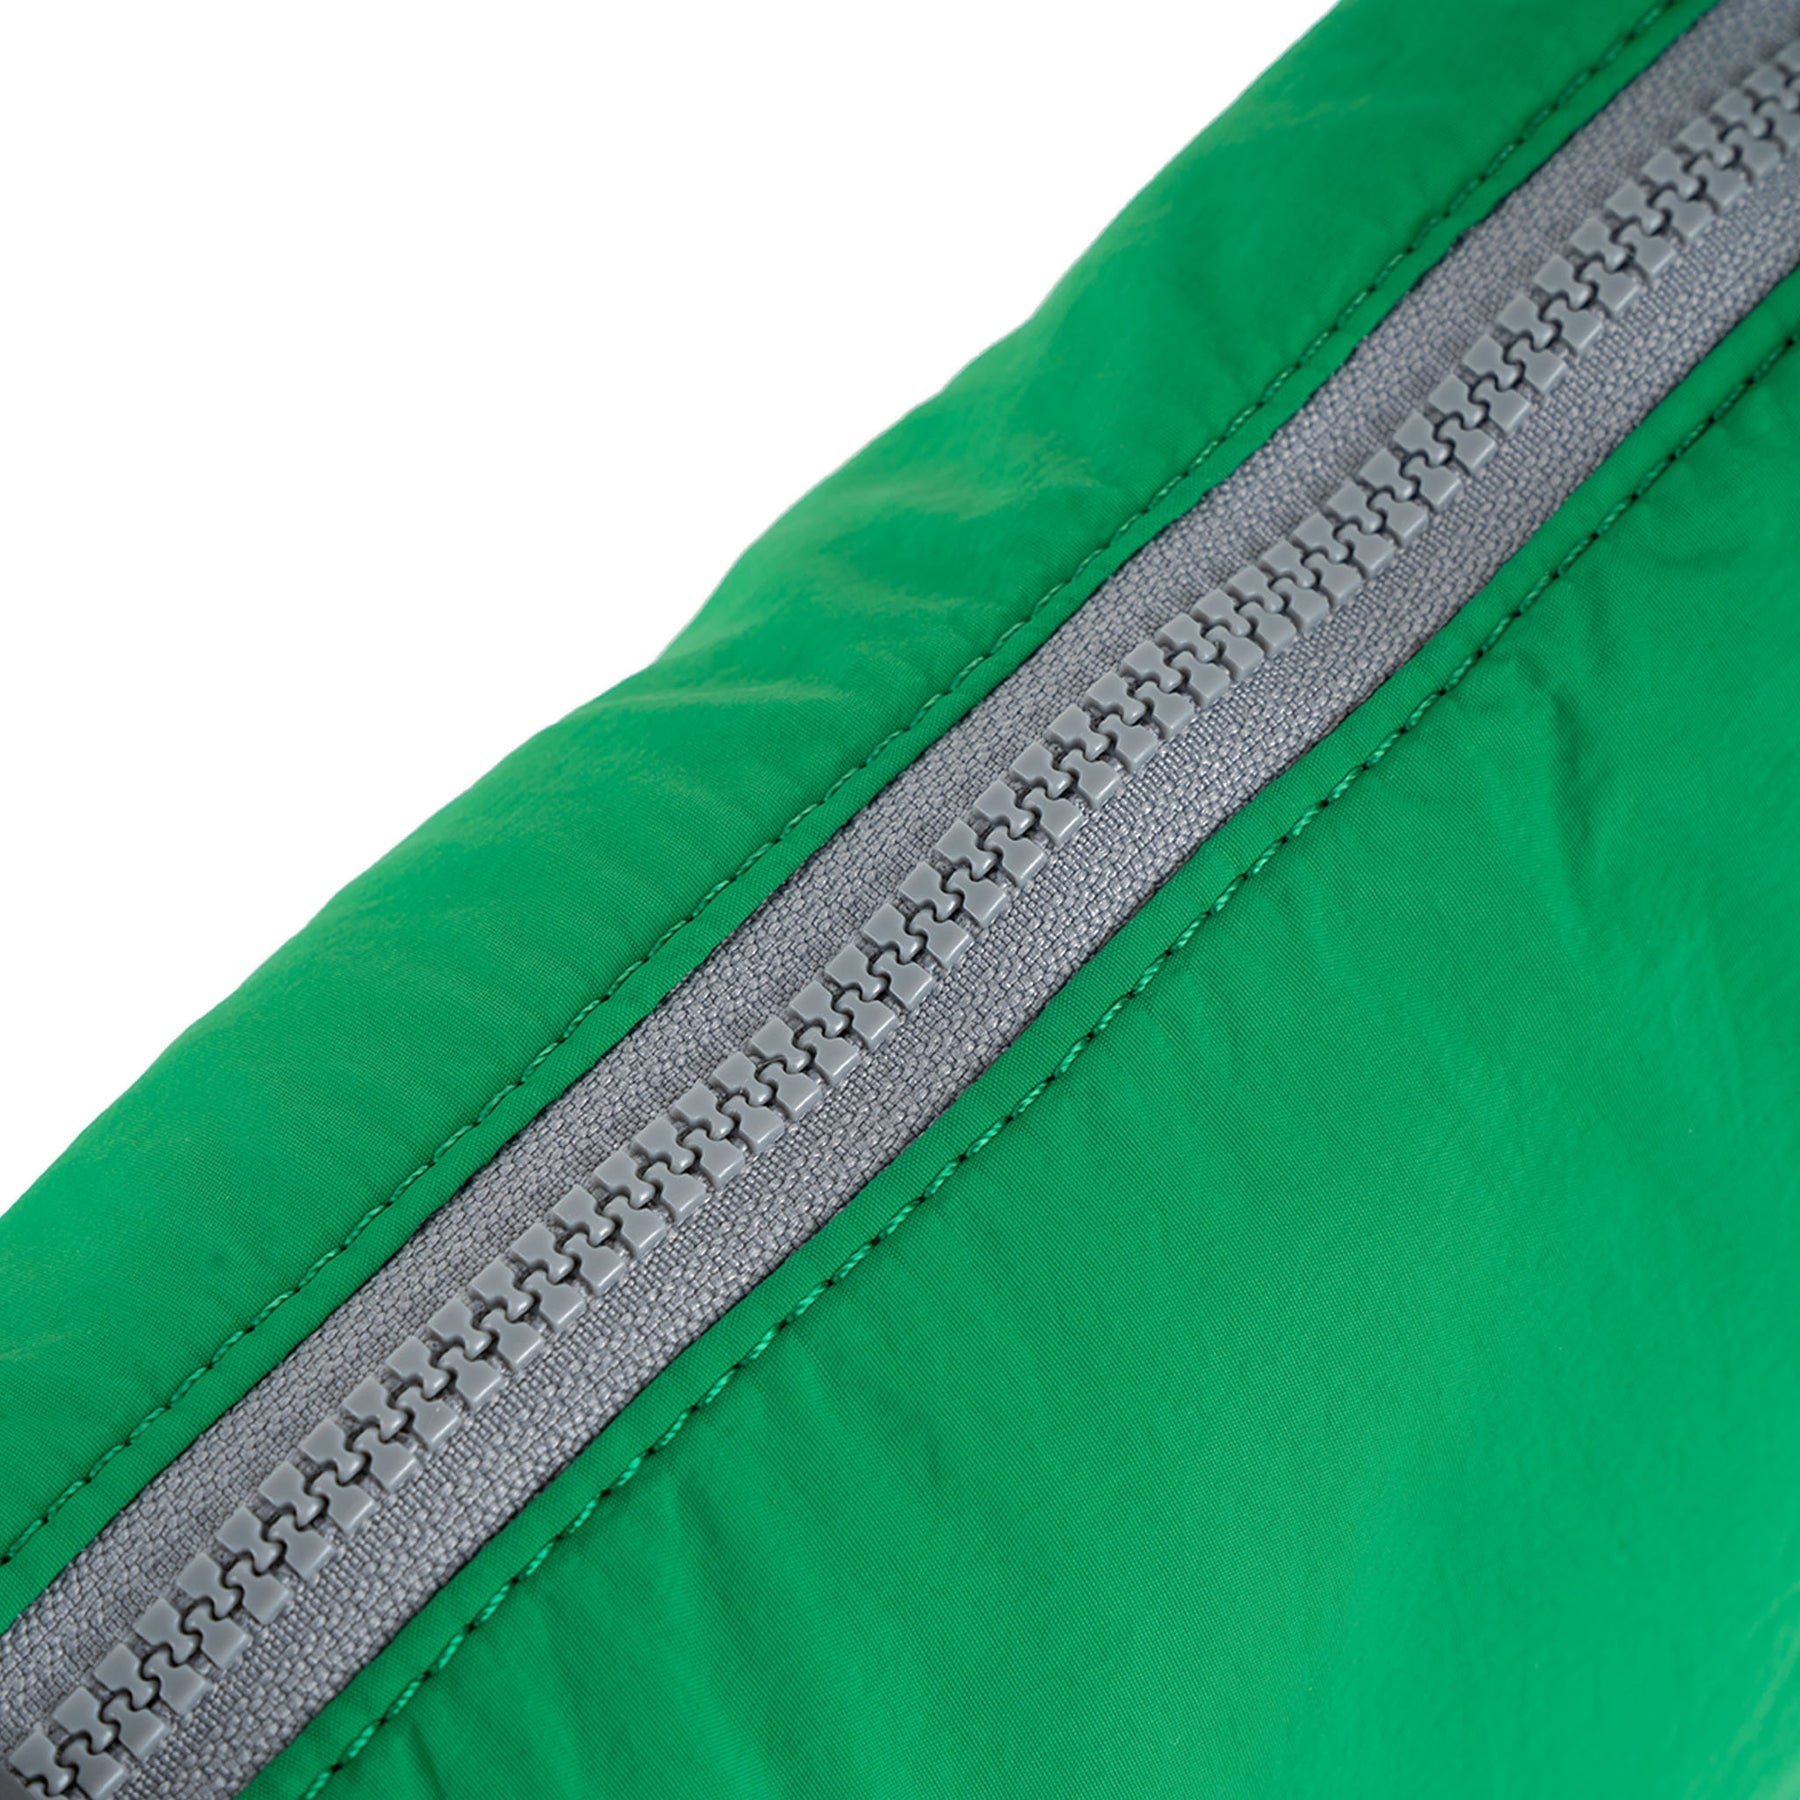 ROKA Farringdon Amazon Recycled Taslon Bag - OS